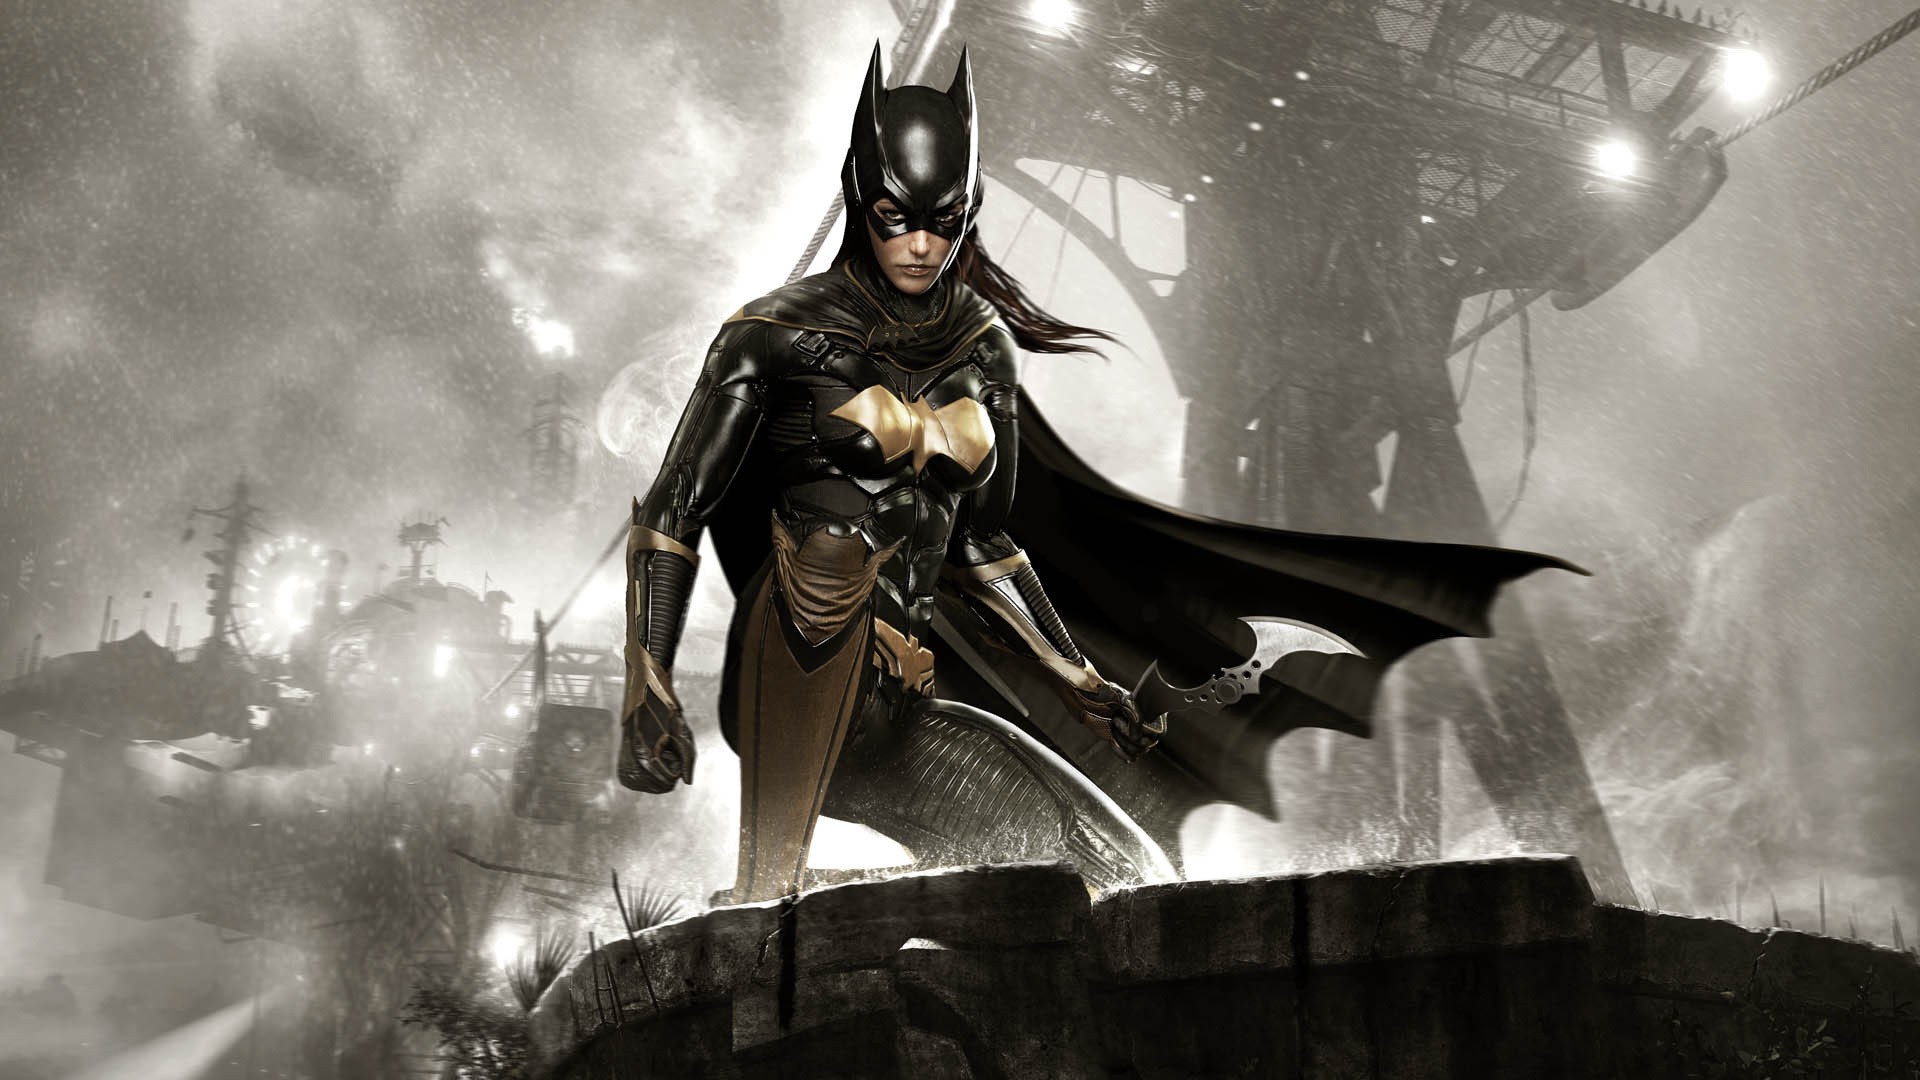 Batgirl, "Batman Arkham Knight "